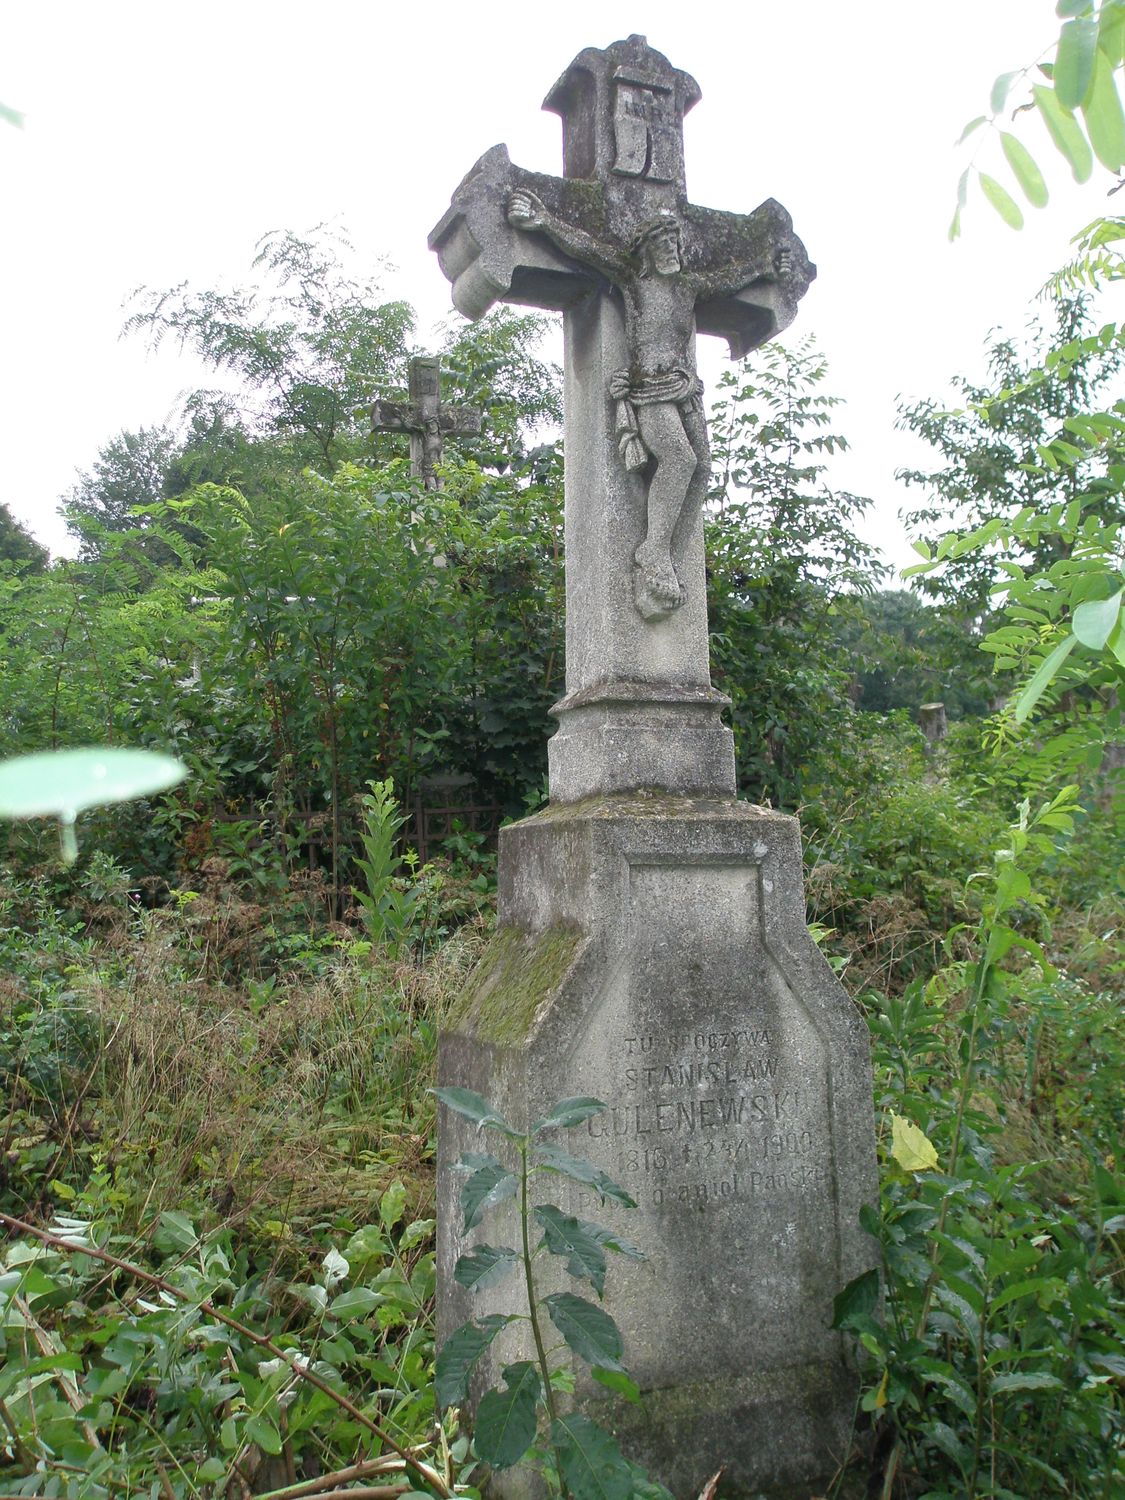 Tombstone of Stanislav Gulenewski from the cemetery in Monasterzyska, state from 2007